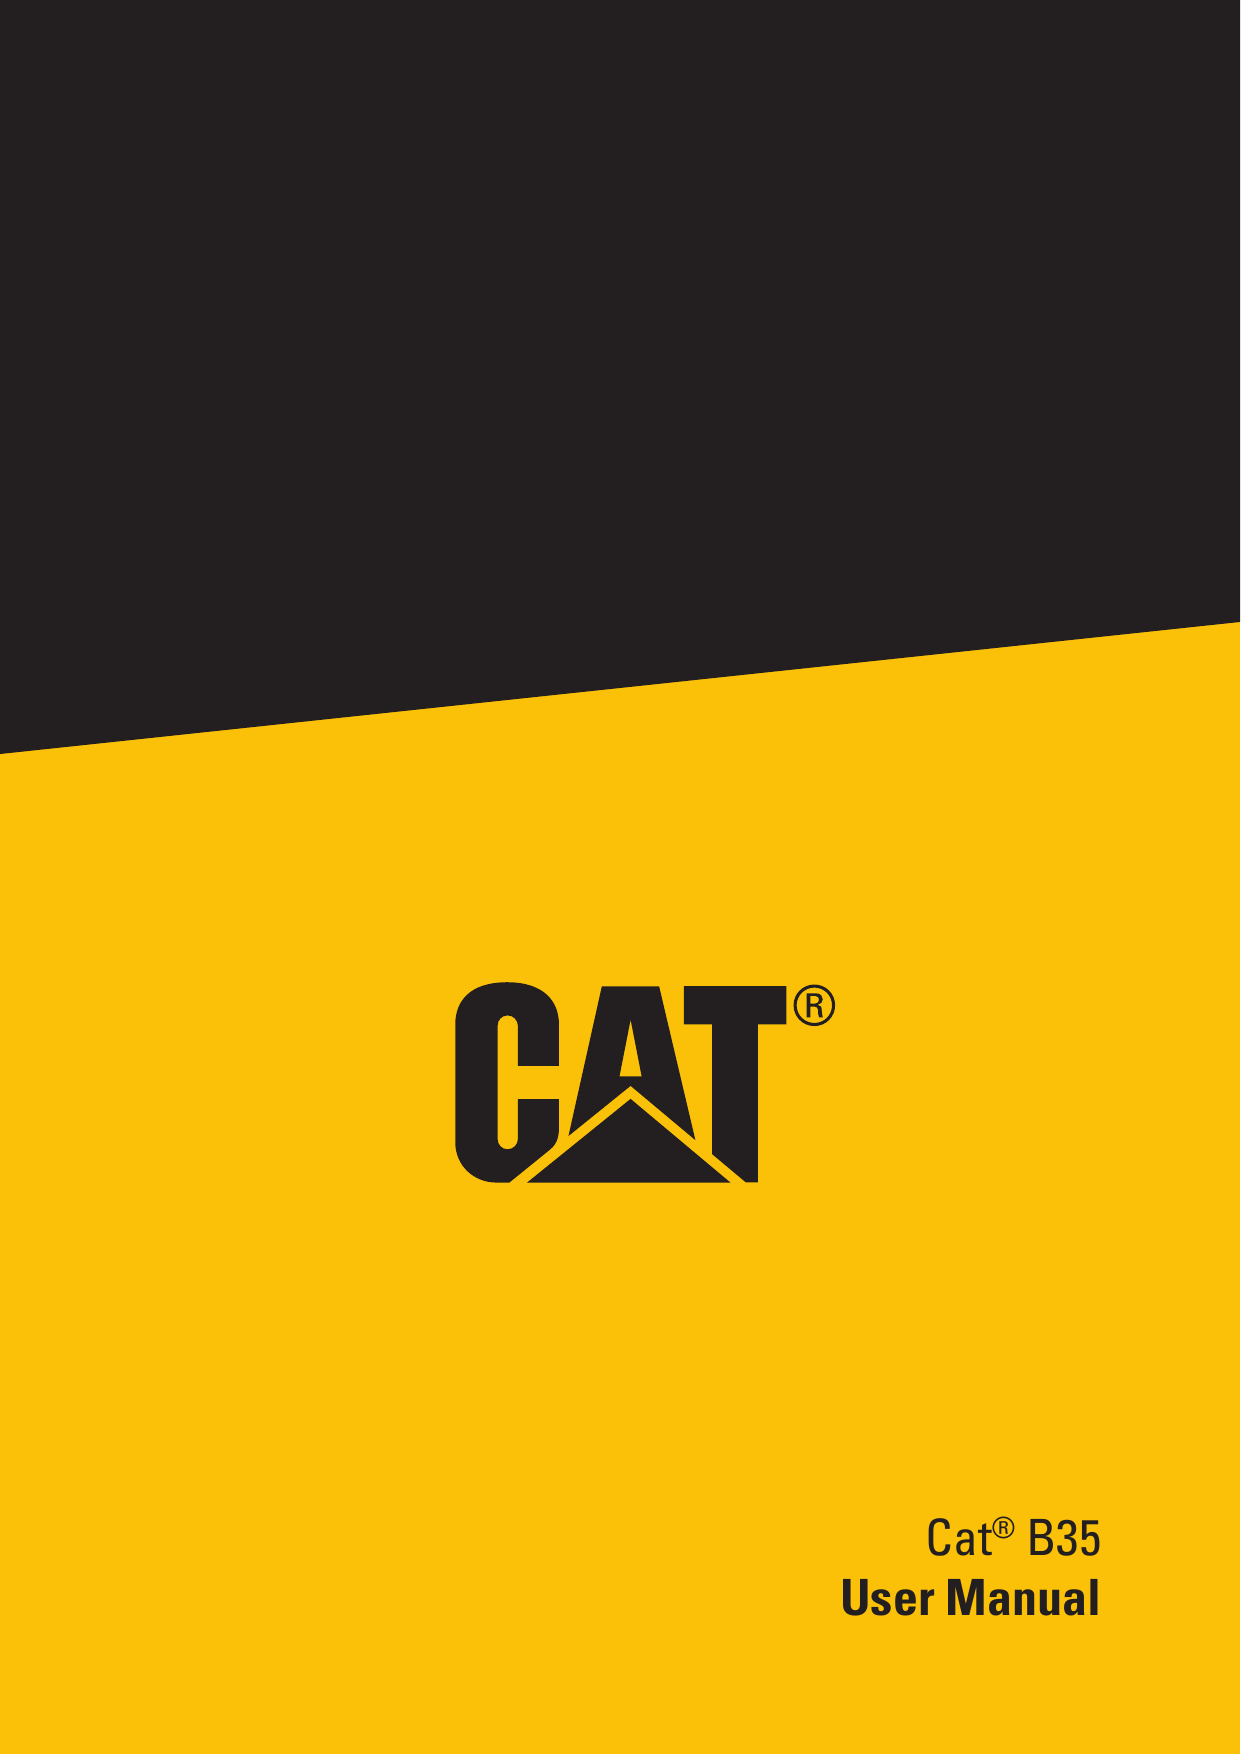 Cat® B35User Manual1